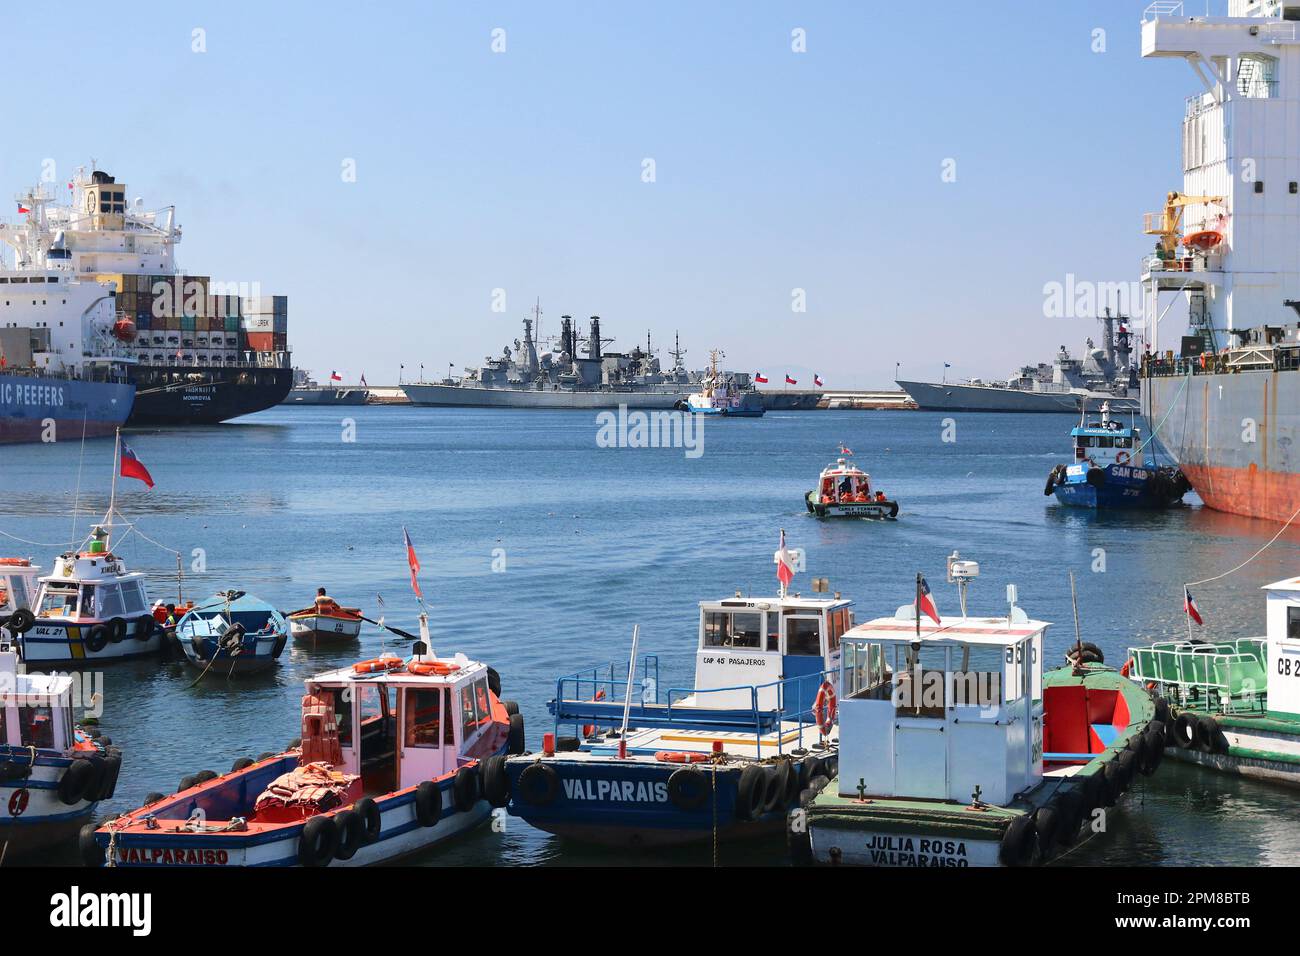 Fregate anti-sommergibile della Marina cilena ancorate fianco a fianco nel porto di Valparaiso, cargo e barche da pesca, Armada de Chile, nave da guerra, container Foto Stock